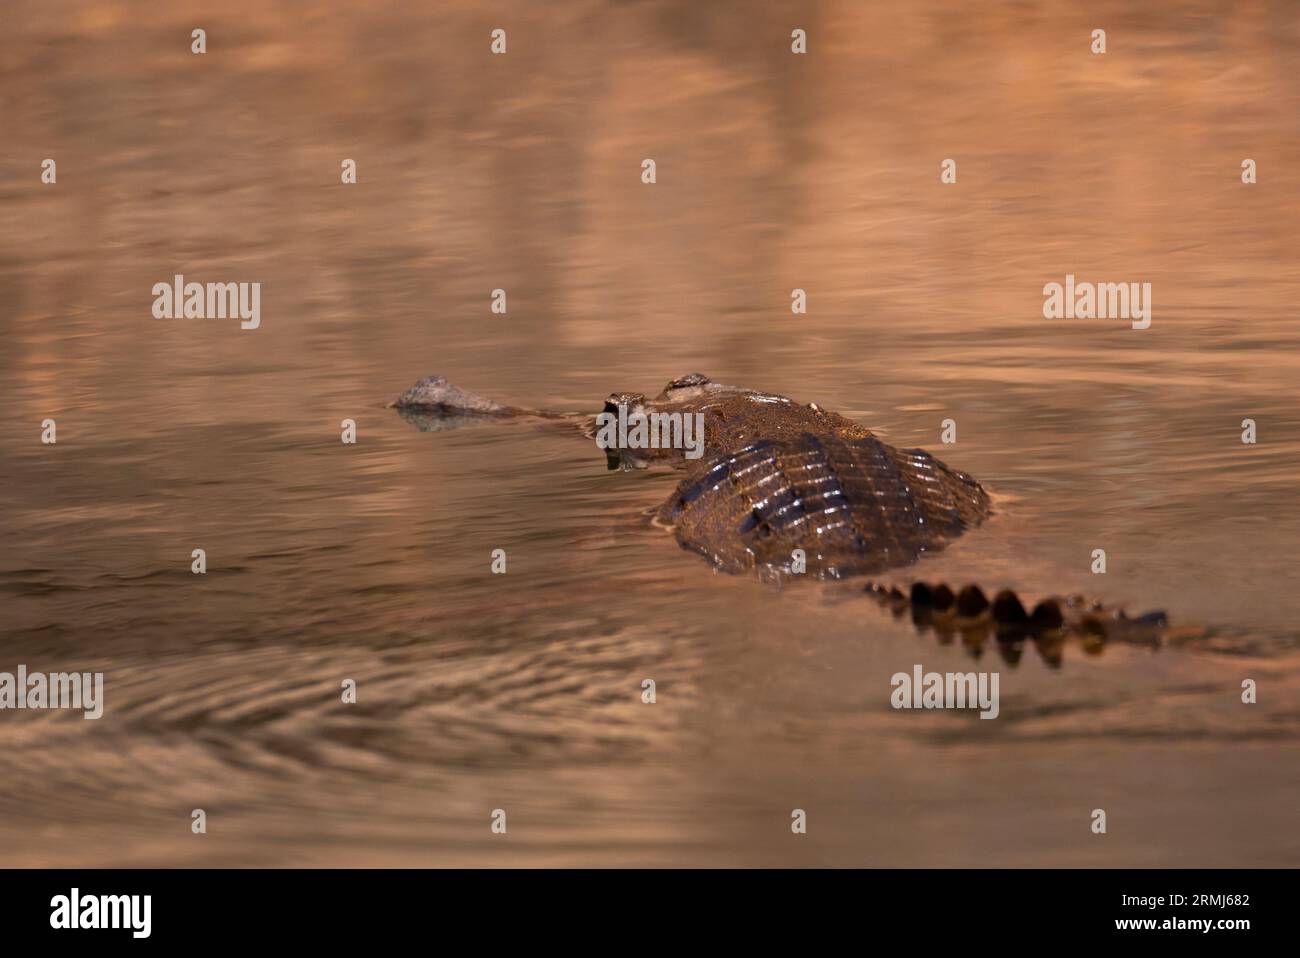 Crocodylus johnstoni, un crocodile d'eau douce australien, nageant dans un ruisseau de l'Outback dans le nord du Queensland, en Australie. Banque D'Images